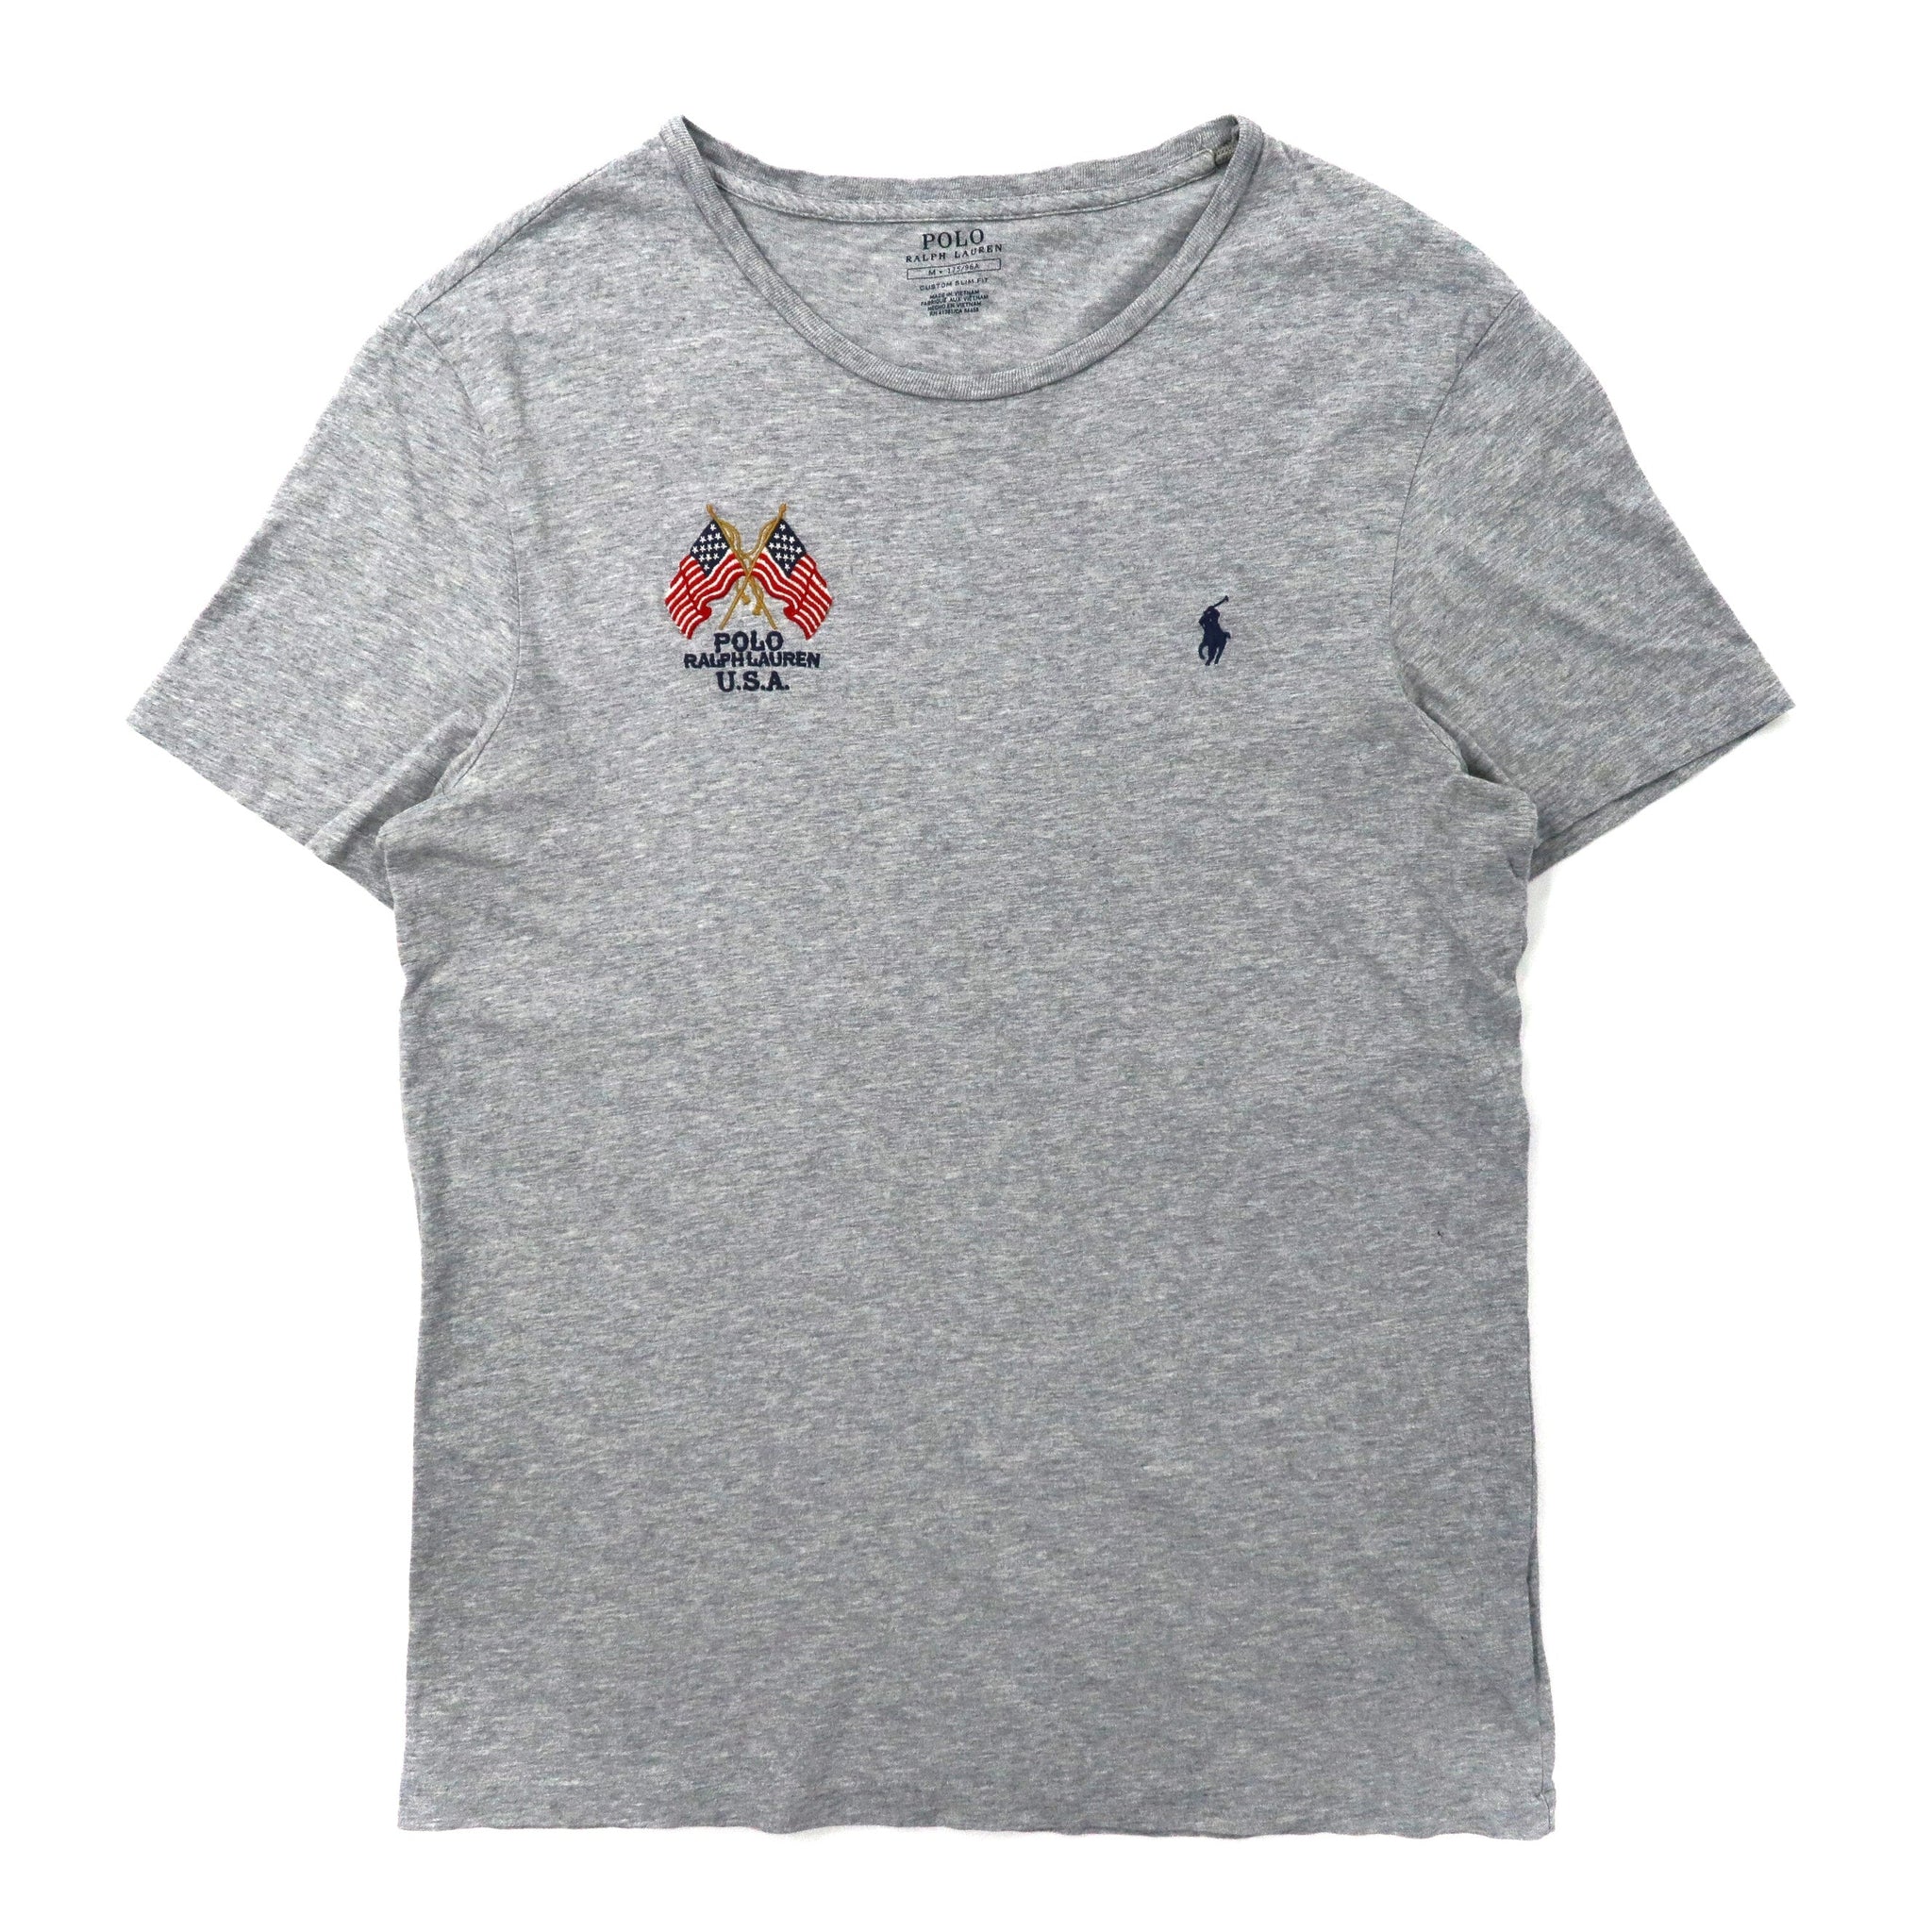 POLO RALPH LAUREN ロゴ刺繍Tシャツ 175 グレー コットン 星条旗 USA スモールポニー刺繍